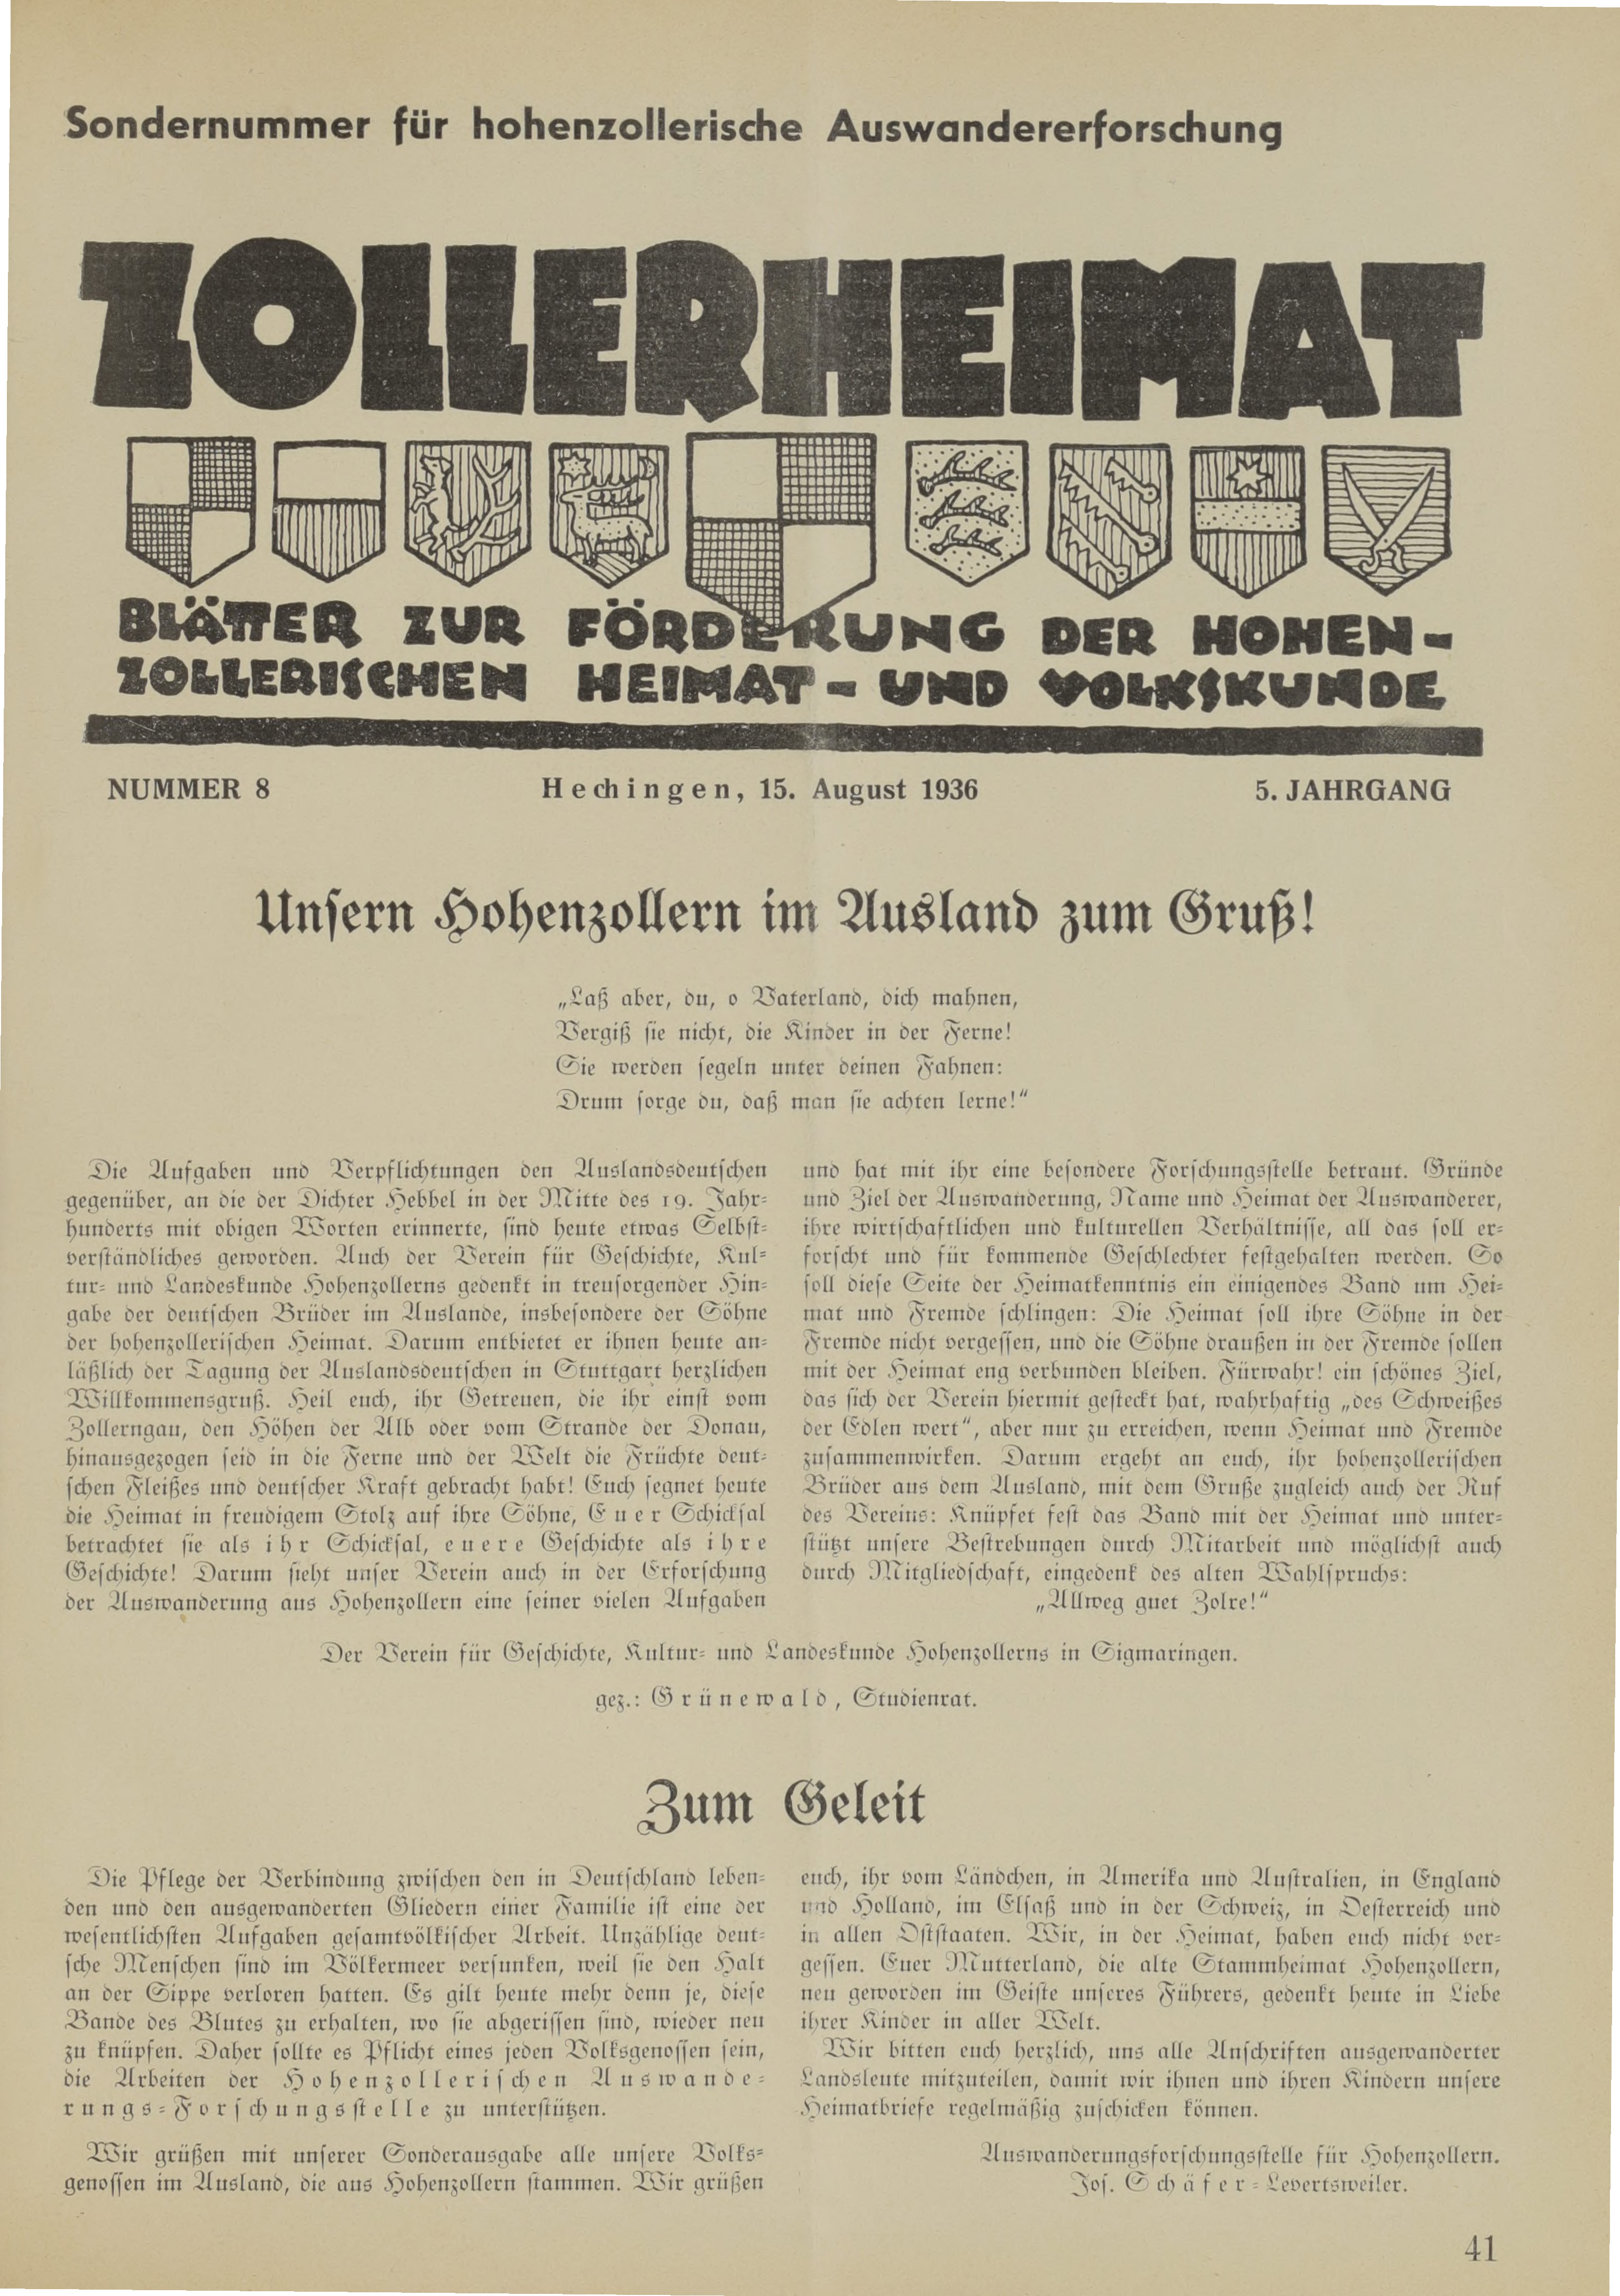                     Ansehen Bd. 5 Nr. 8 (1936): Zollerheimat
                